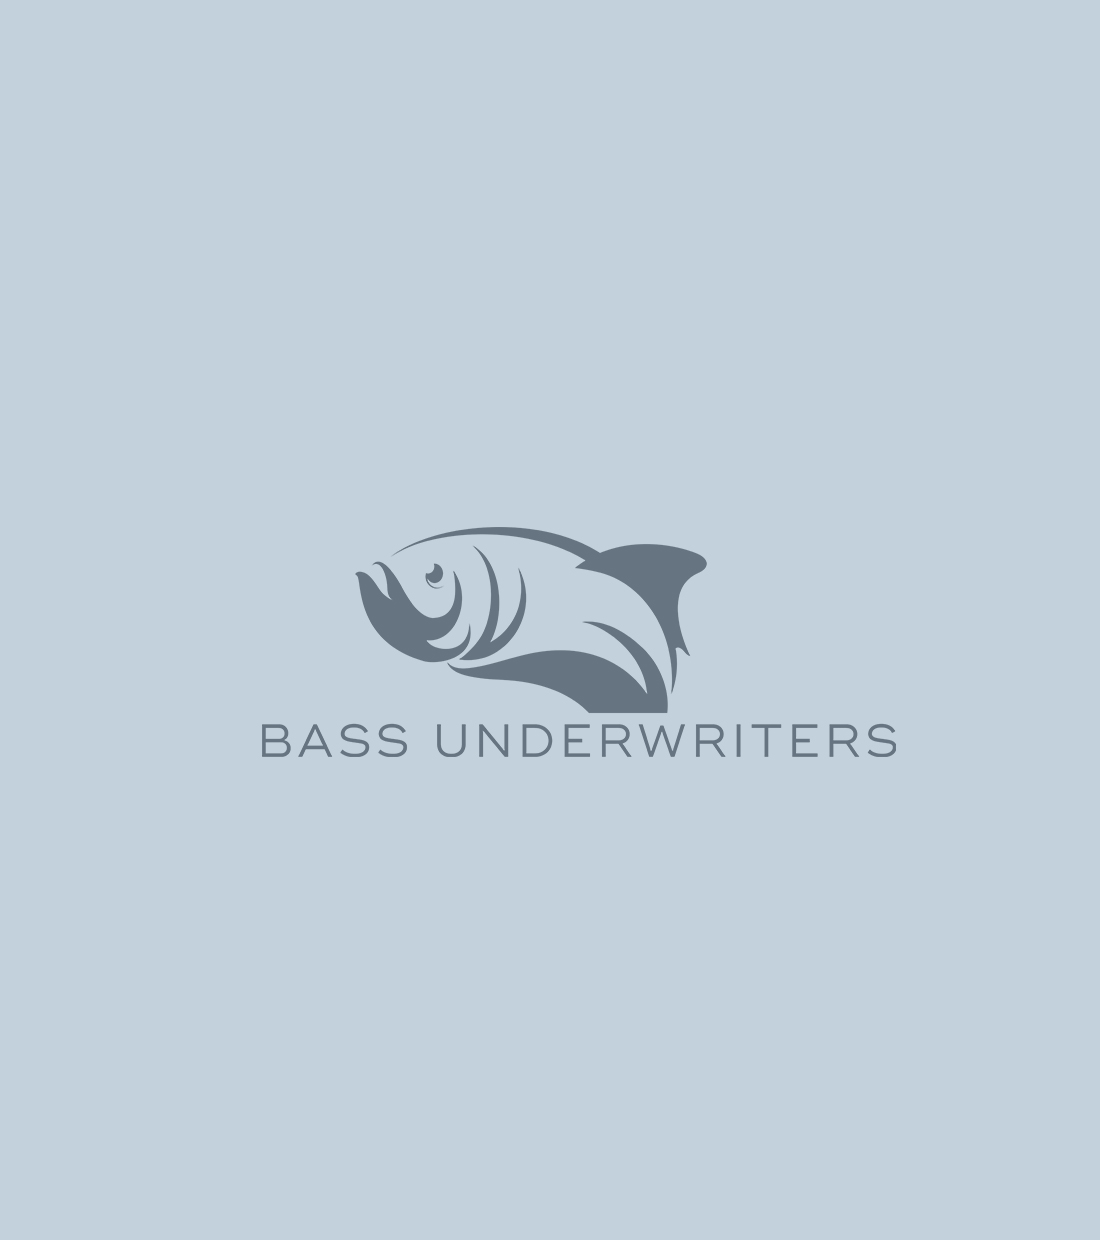 Bass Underwriters 7 Weston 2022 Marketing